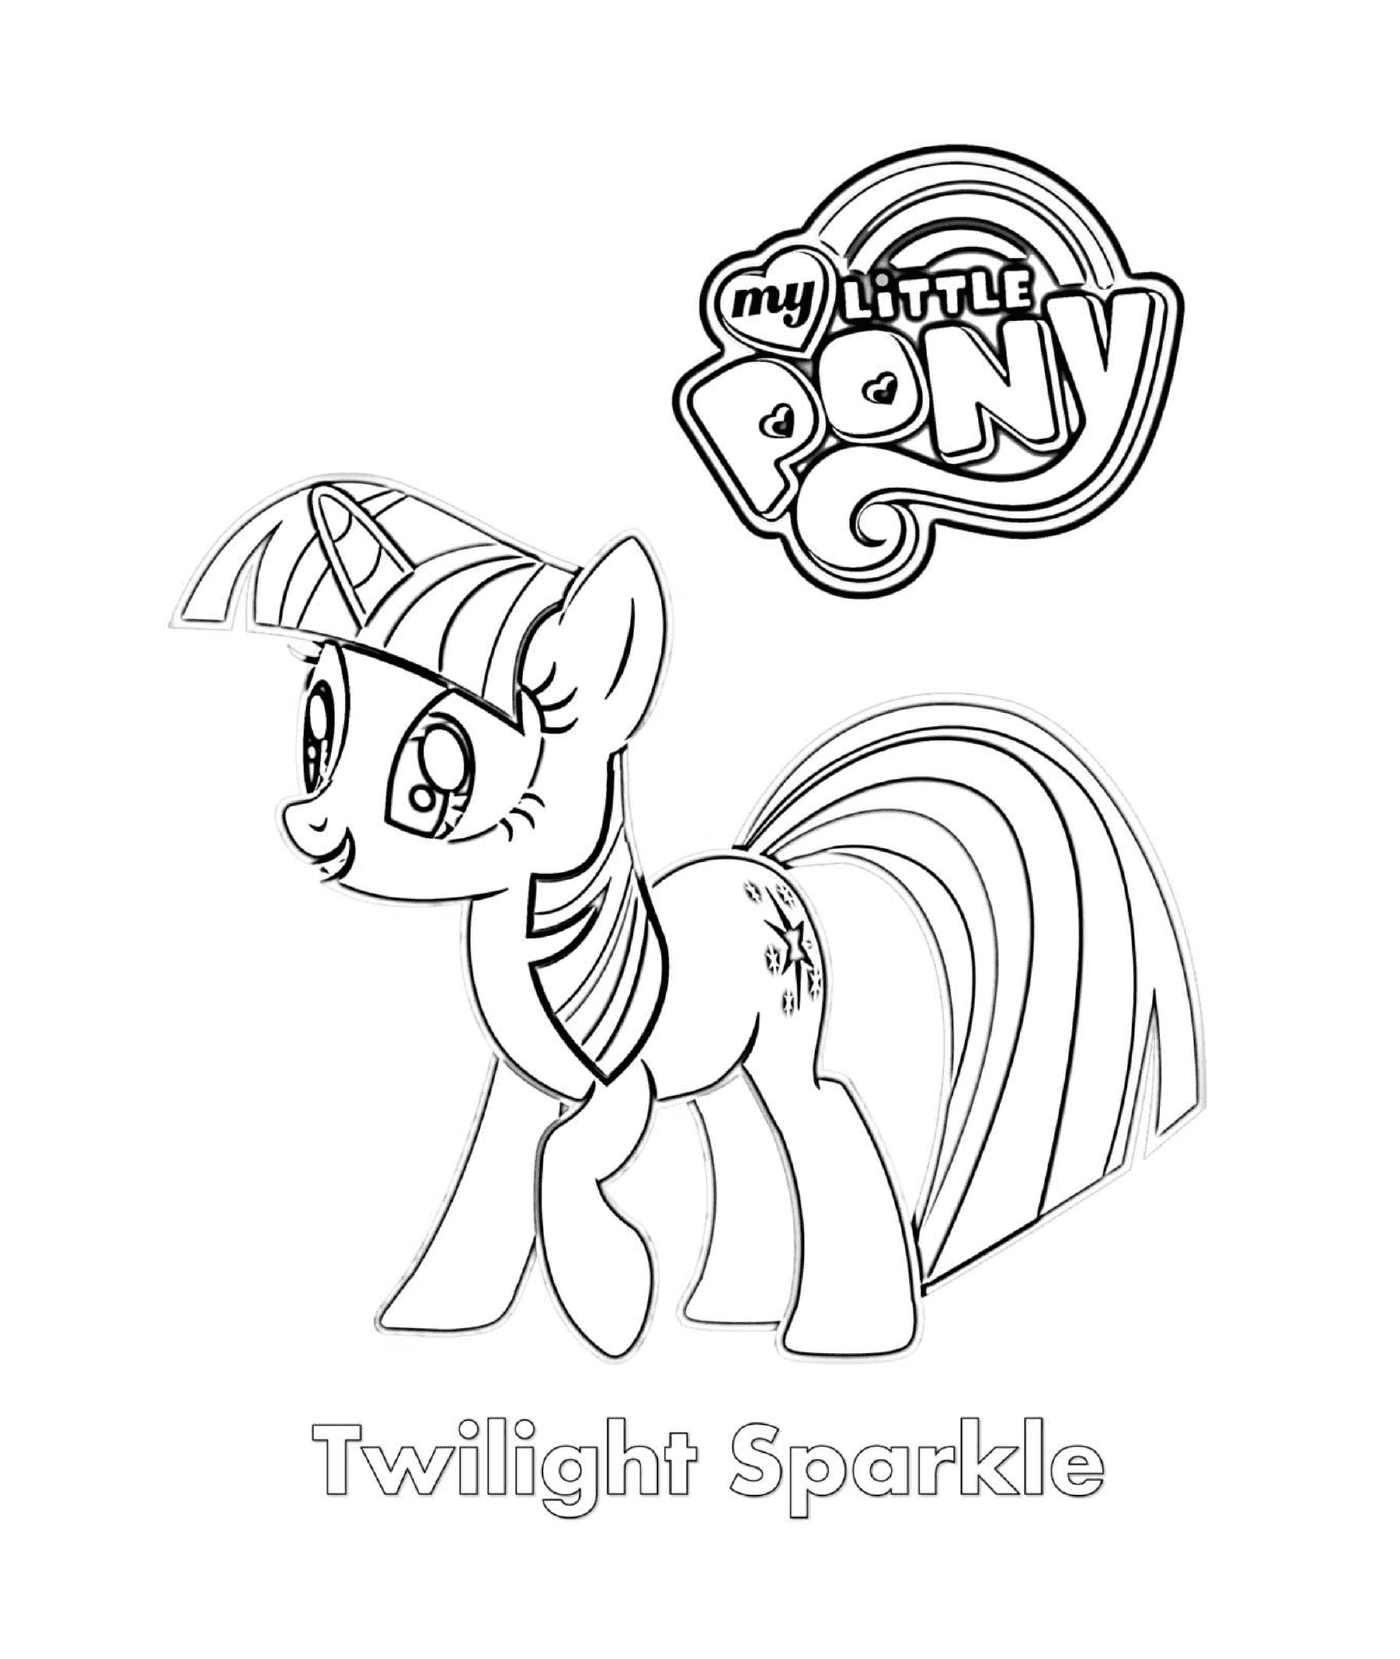   Twilight Sparkle, le poney nommé Twilight Sparkle 